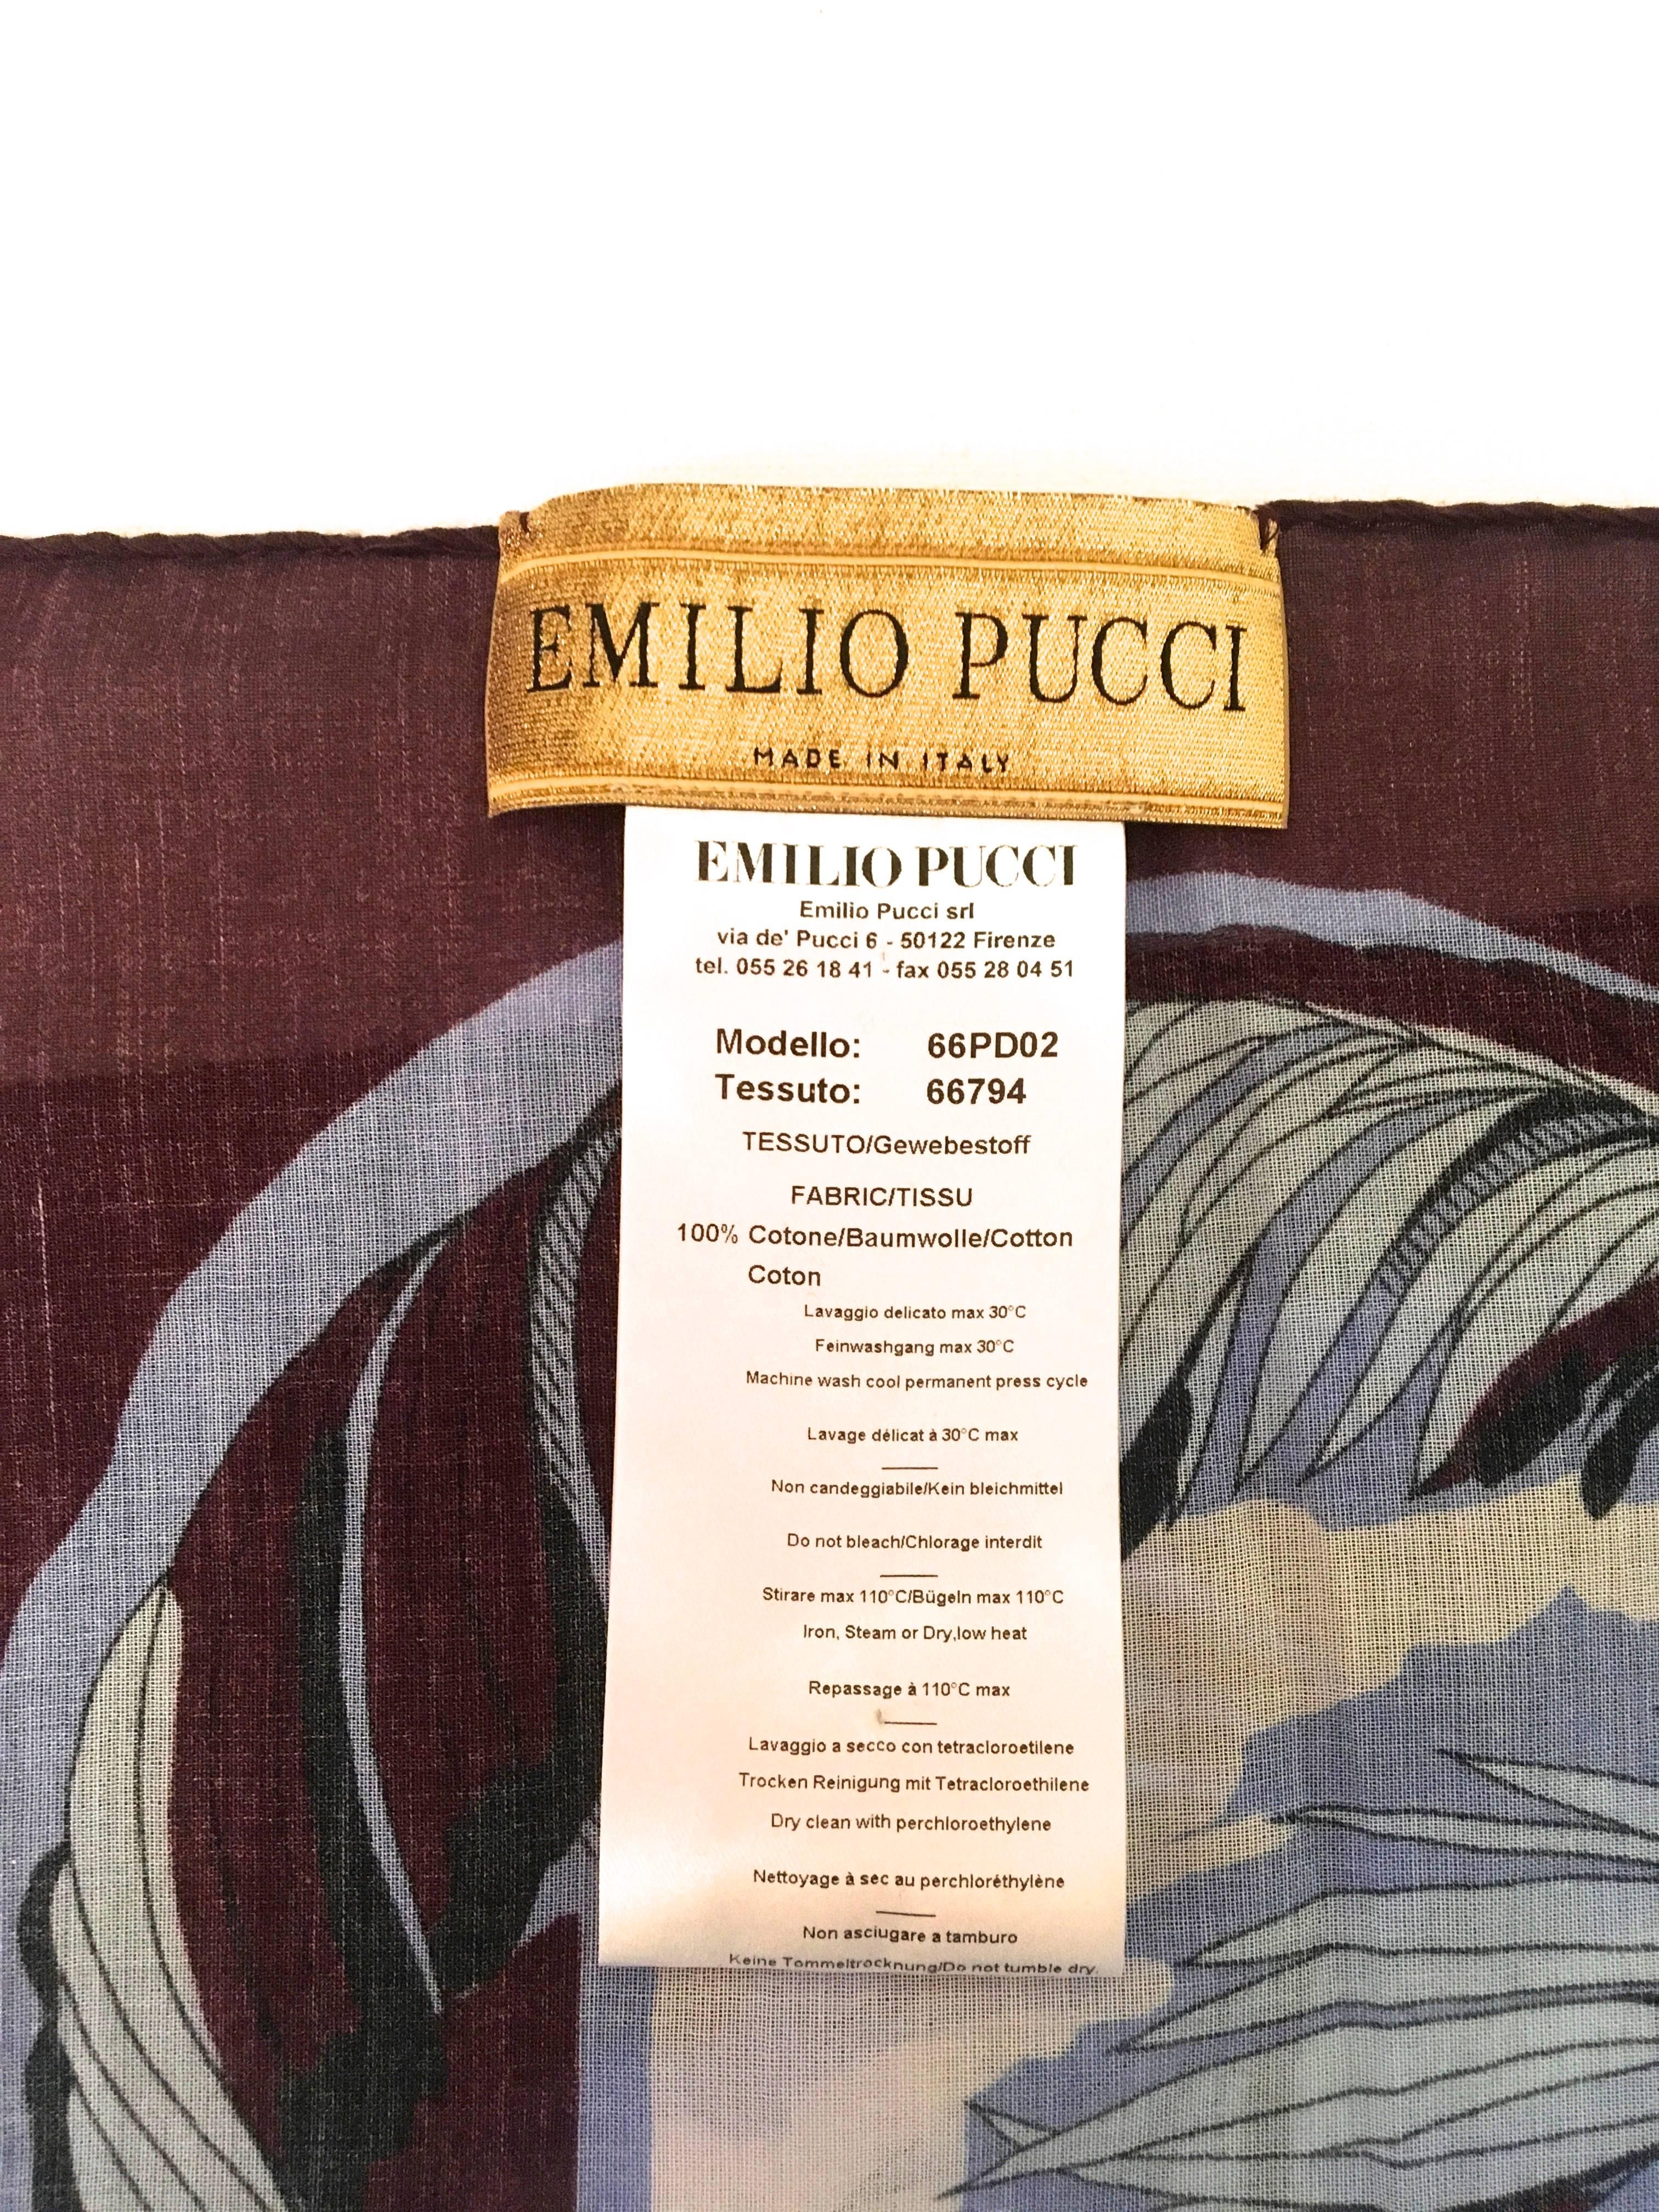 New Emilio Pucci Pareo / Shawl - Pareo 100% Cotton In Fair Condition For Sale In Boca Raton, FL